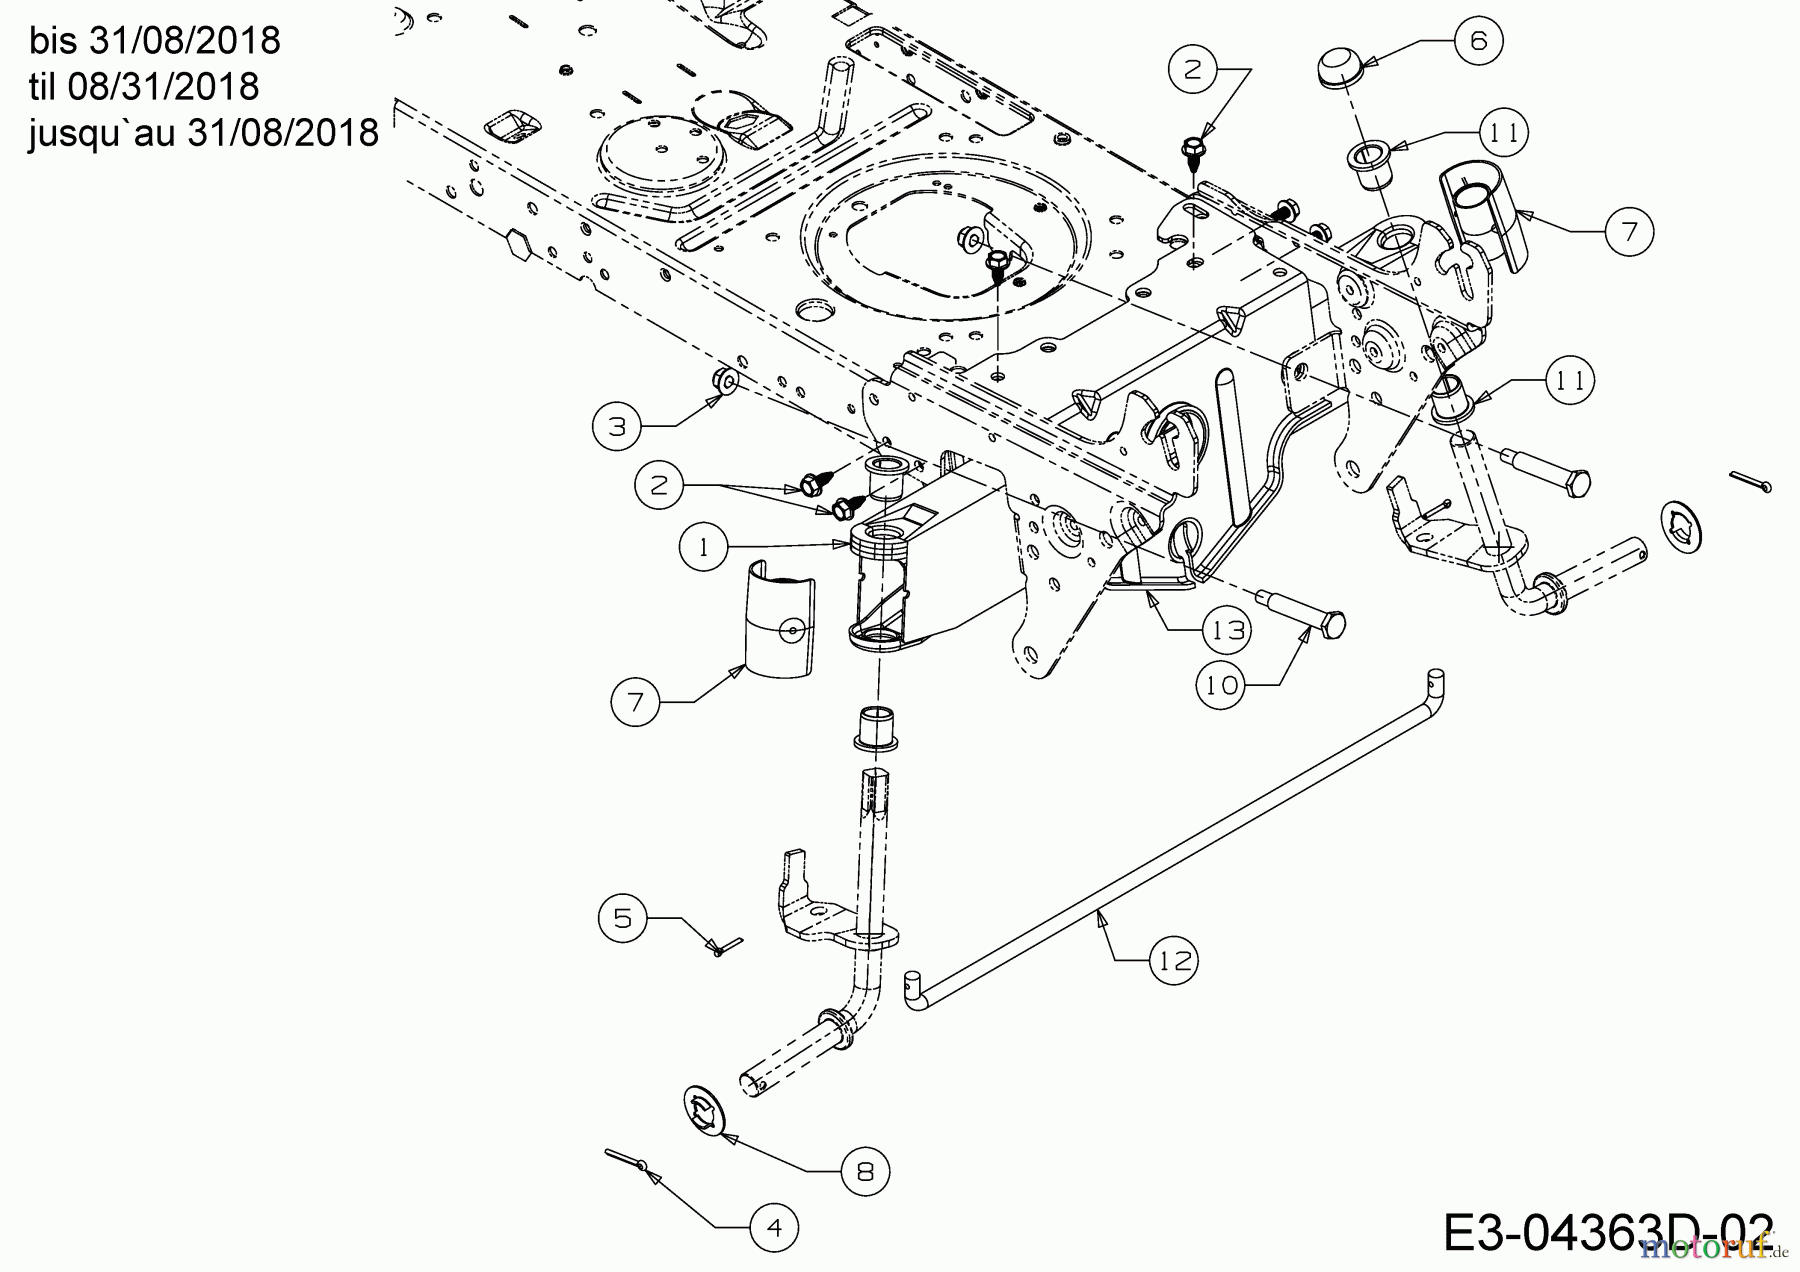  WOLF-Garten Expert Rasentraktoren E 13/92 T 13I2765E650  (2018) Vorderachse bis 31/08/2018